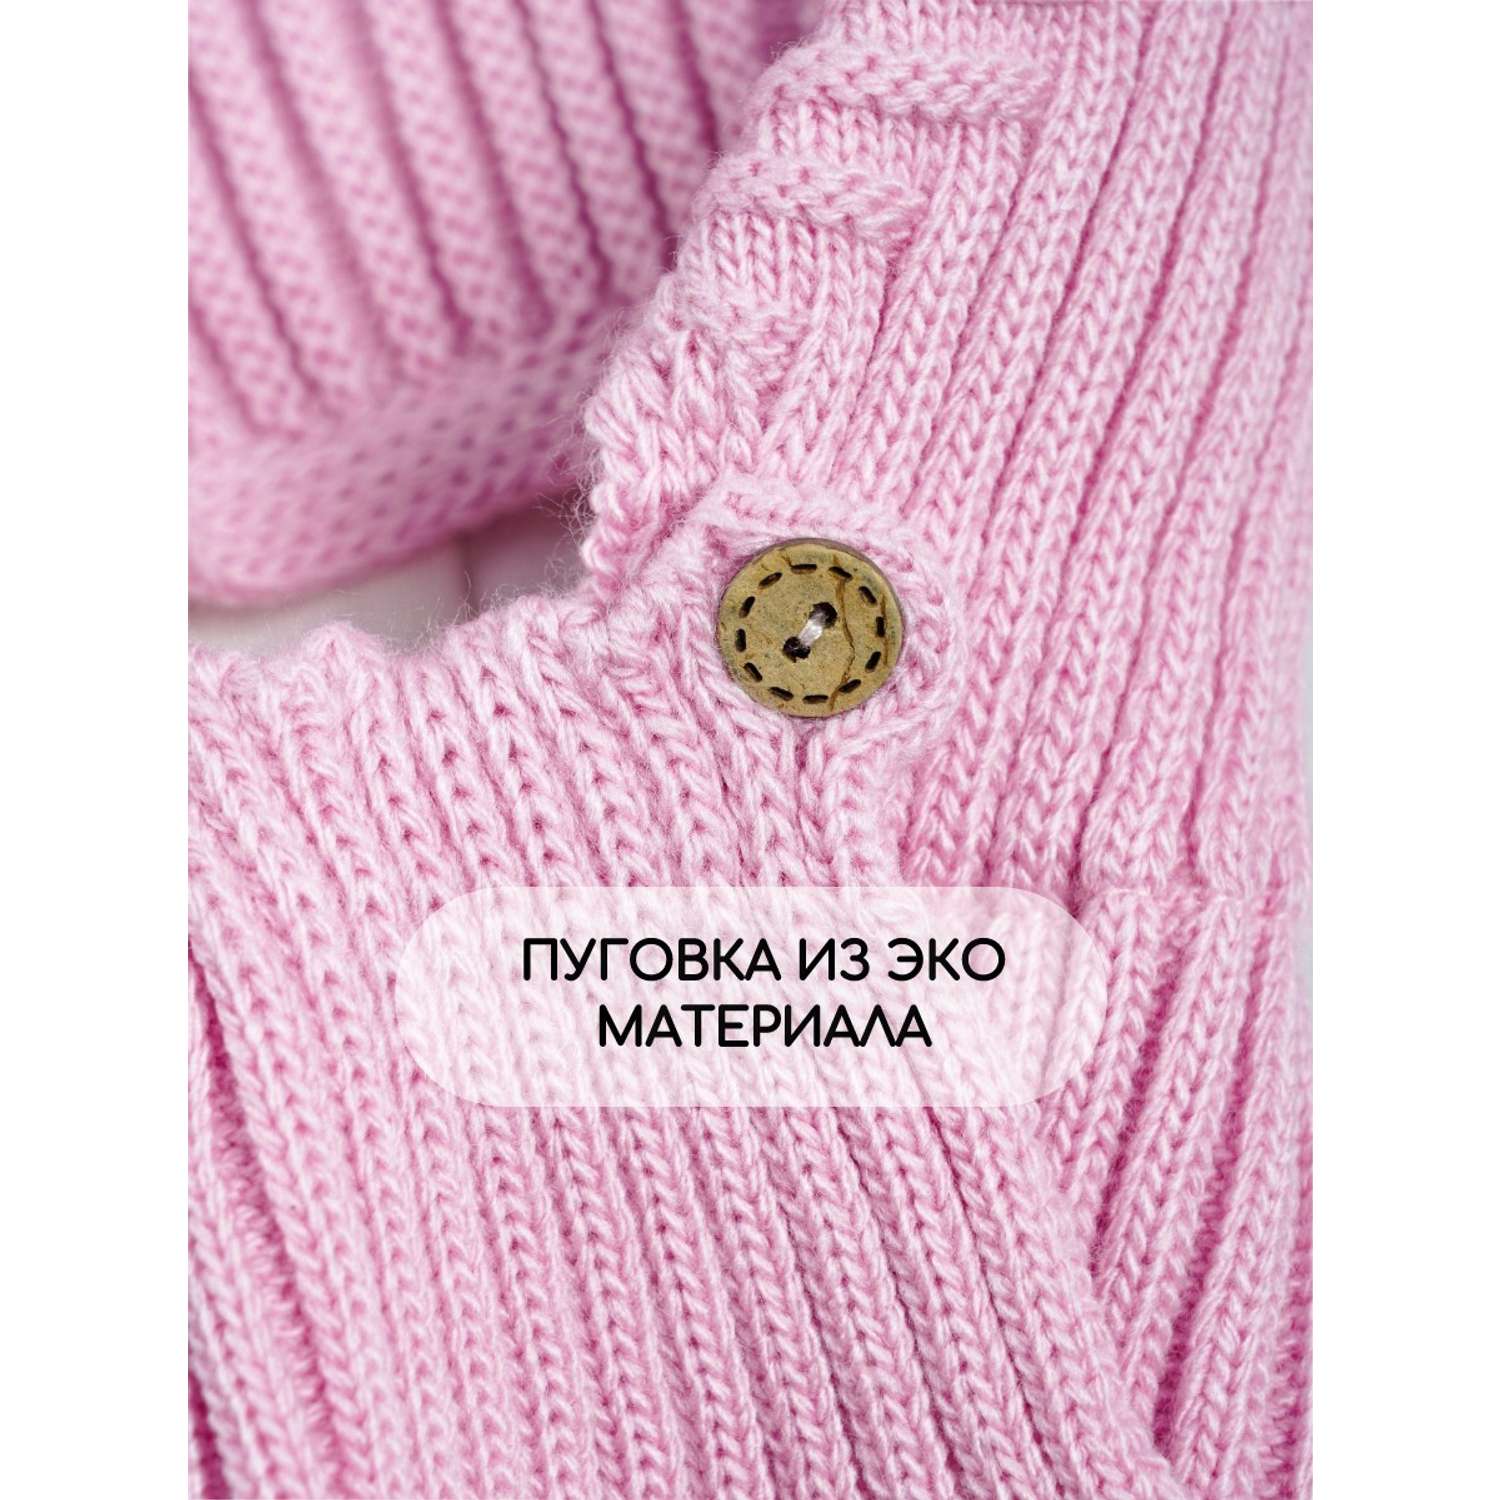 Шапка-шлем Prikinder U-Sp_22326 цвет Ярко-розовый - фото 7